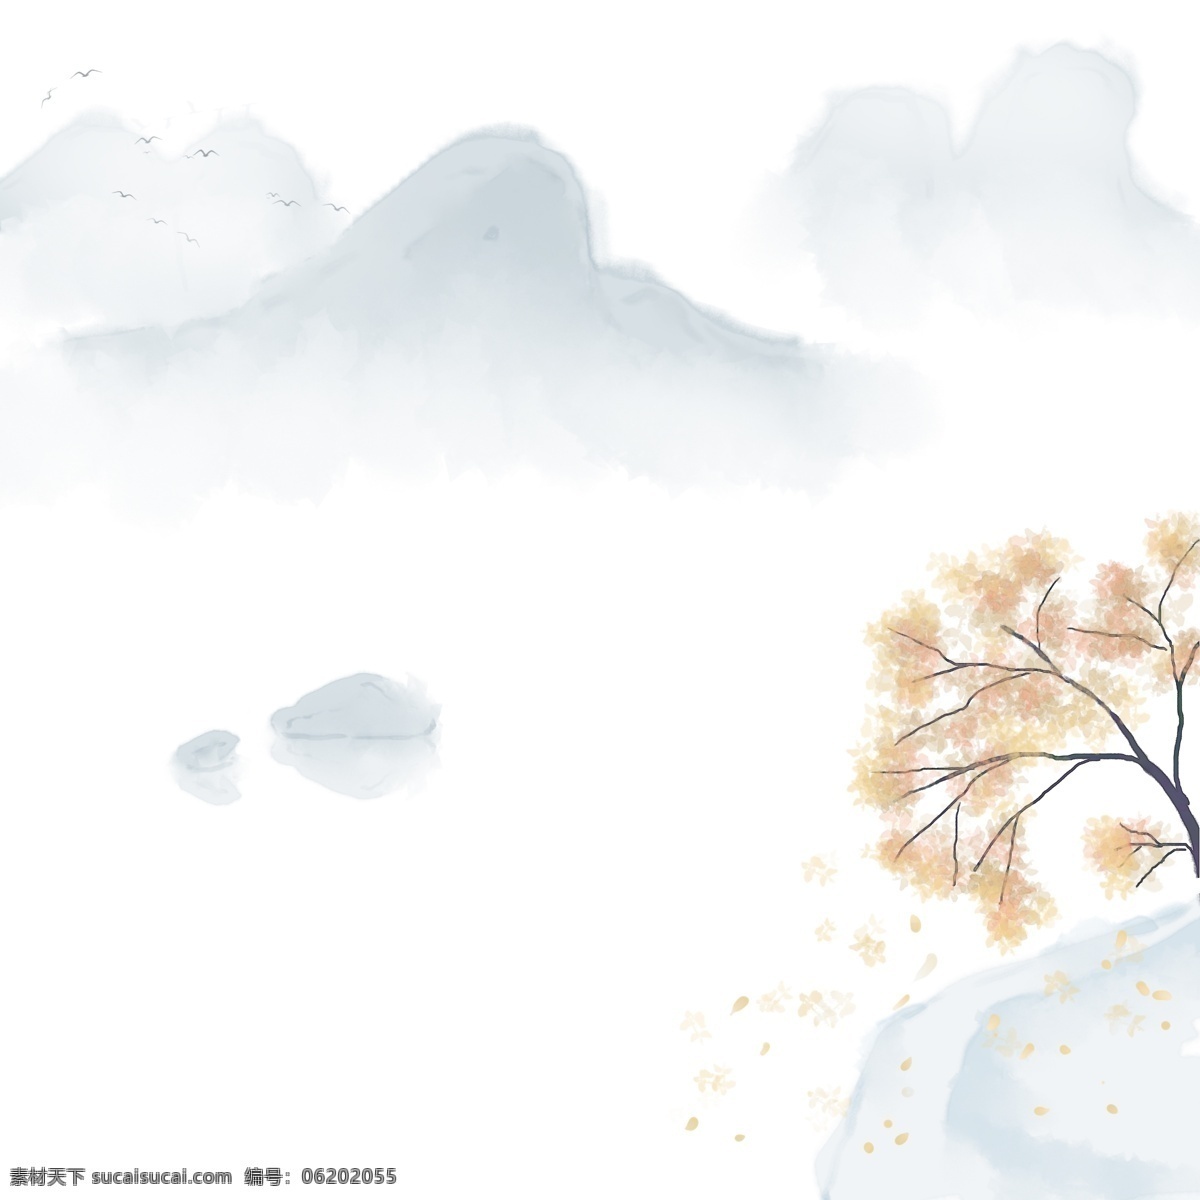 卡通 手绘 中国 风 山水画 卡通手绘 水彩 水墨 小清新 唯美 山 山峰 远处的山 石头 树 飘落 树叶